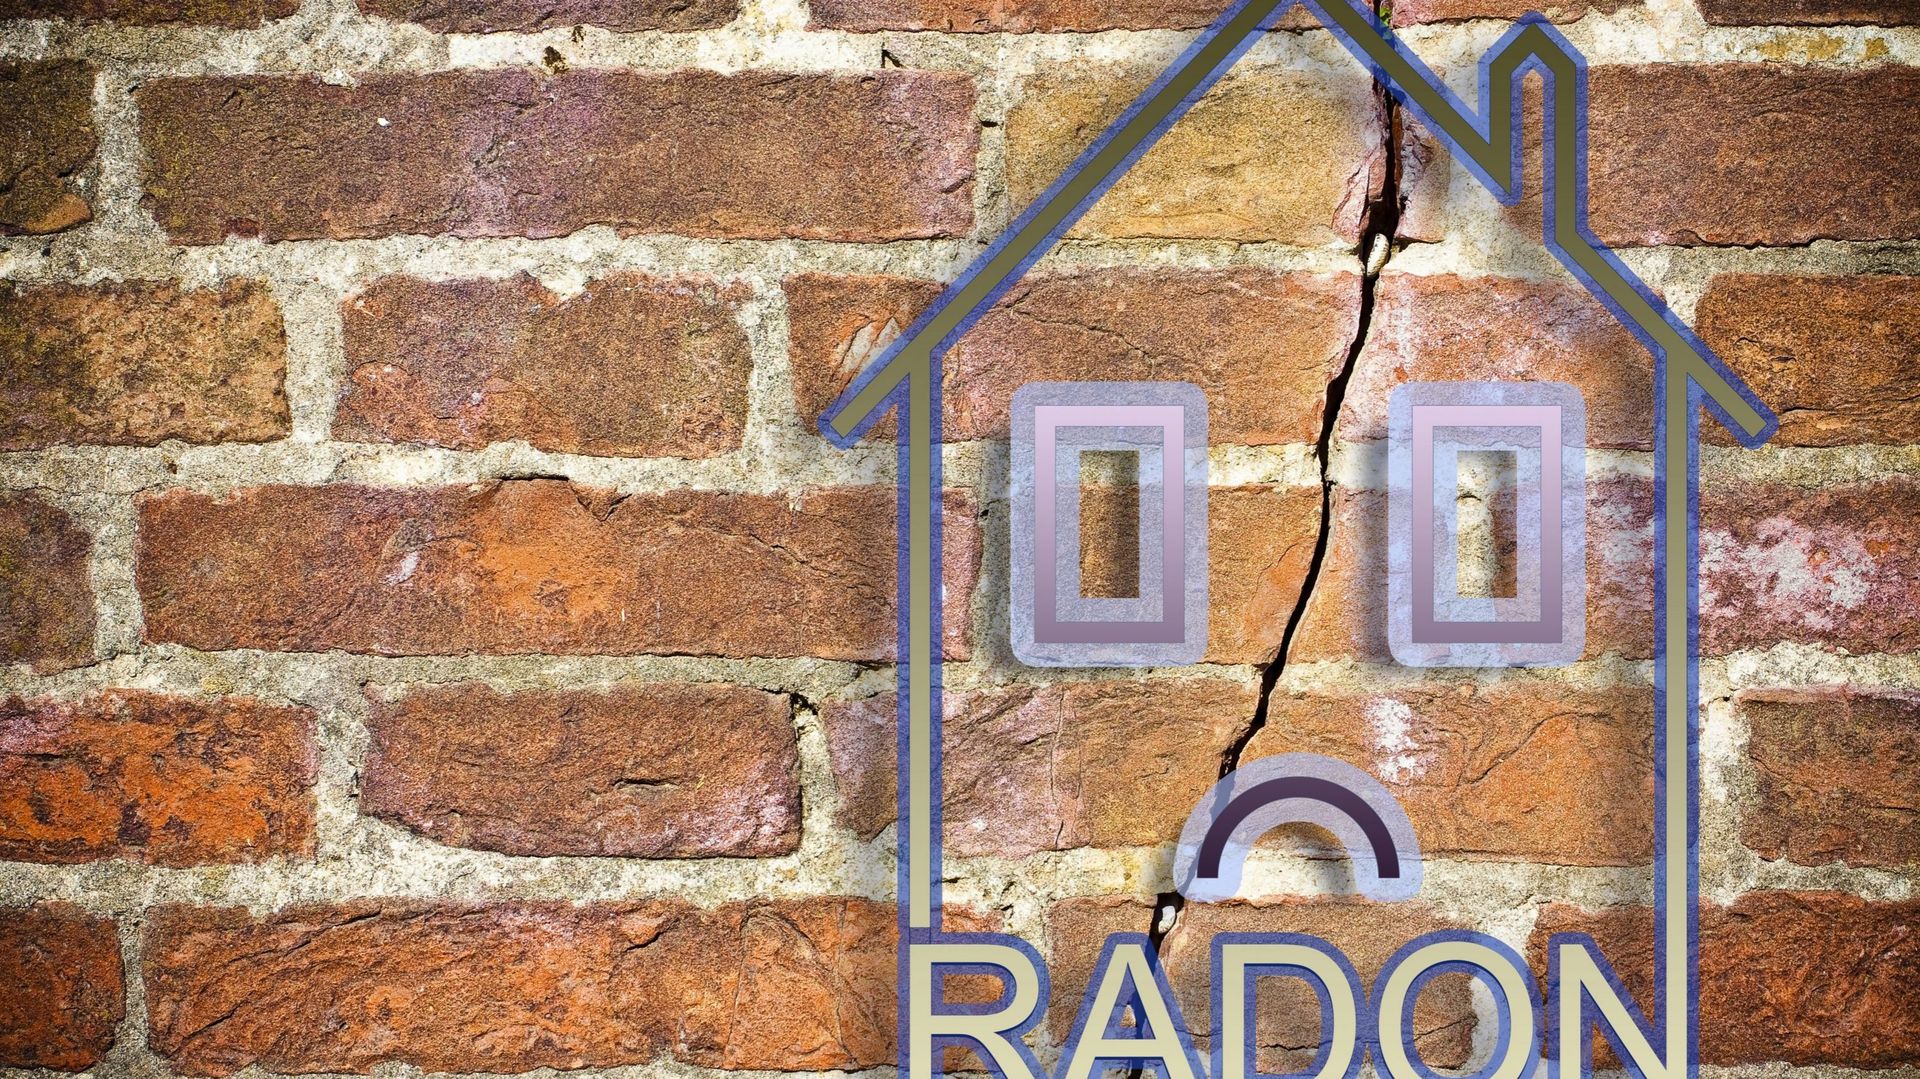 Le radon est un gaz radioactif qui s’infiltre dans les maisons par les fissures présentes au niveau des sols et des murs ou par les tuyaux